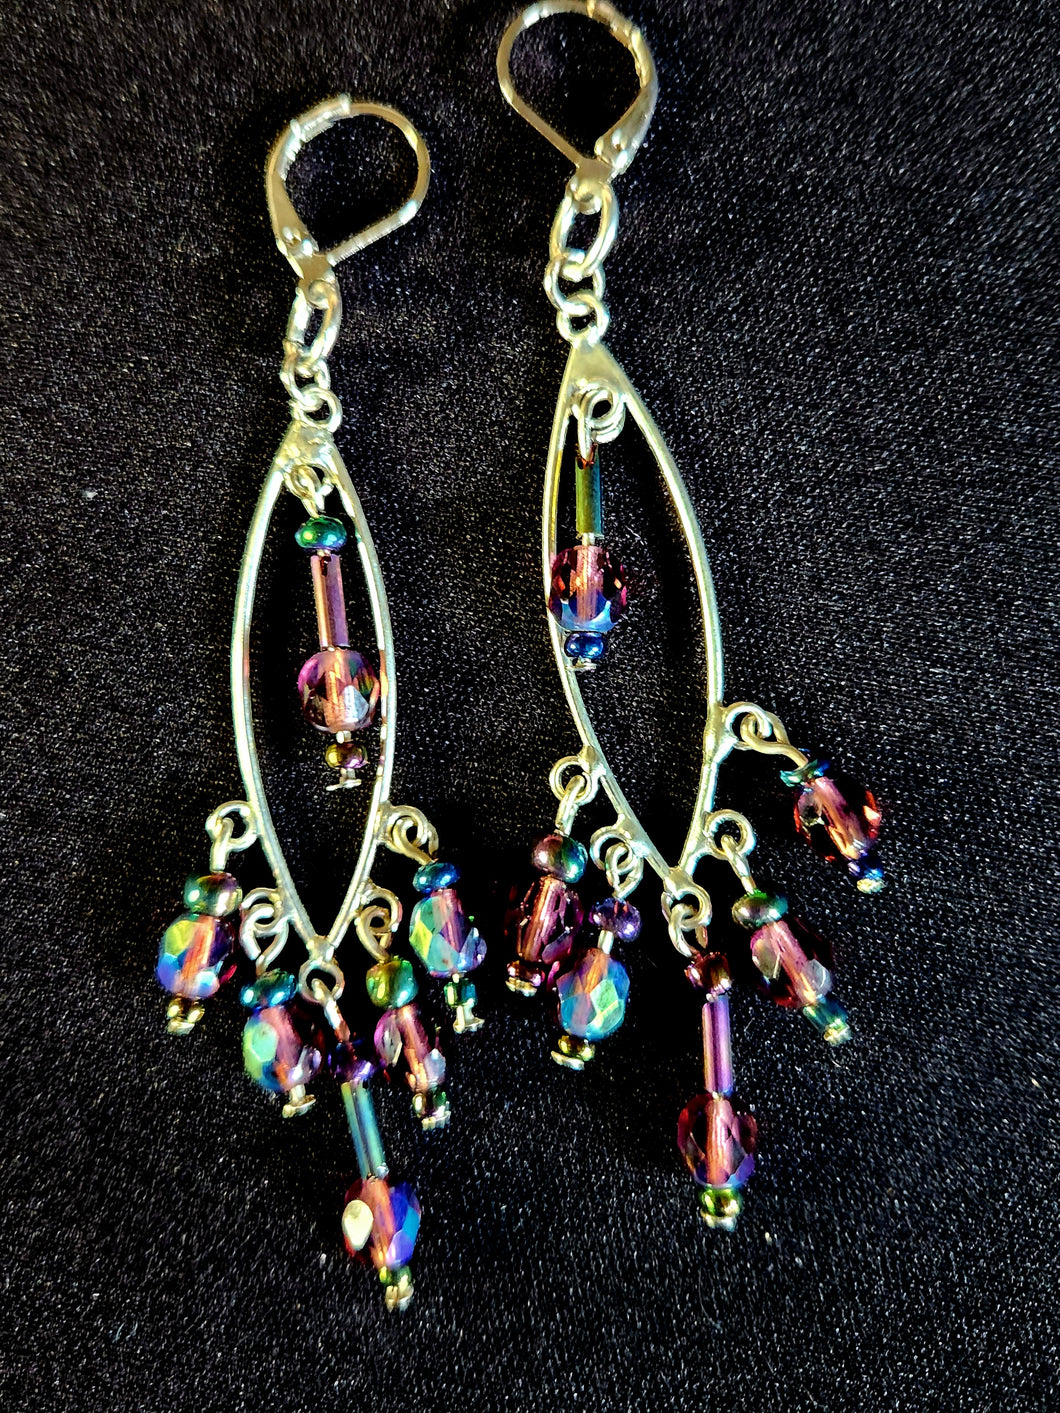 NM2-43 Earings Dangling/Brandy Crystal Beads